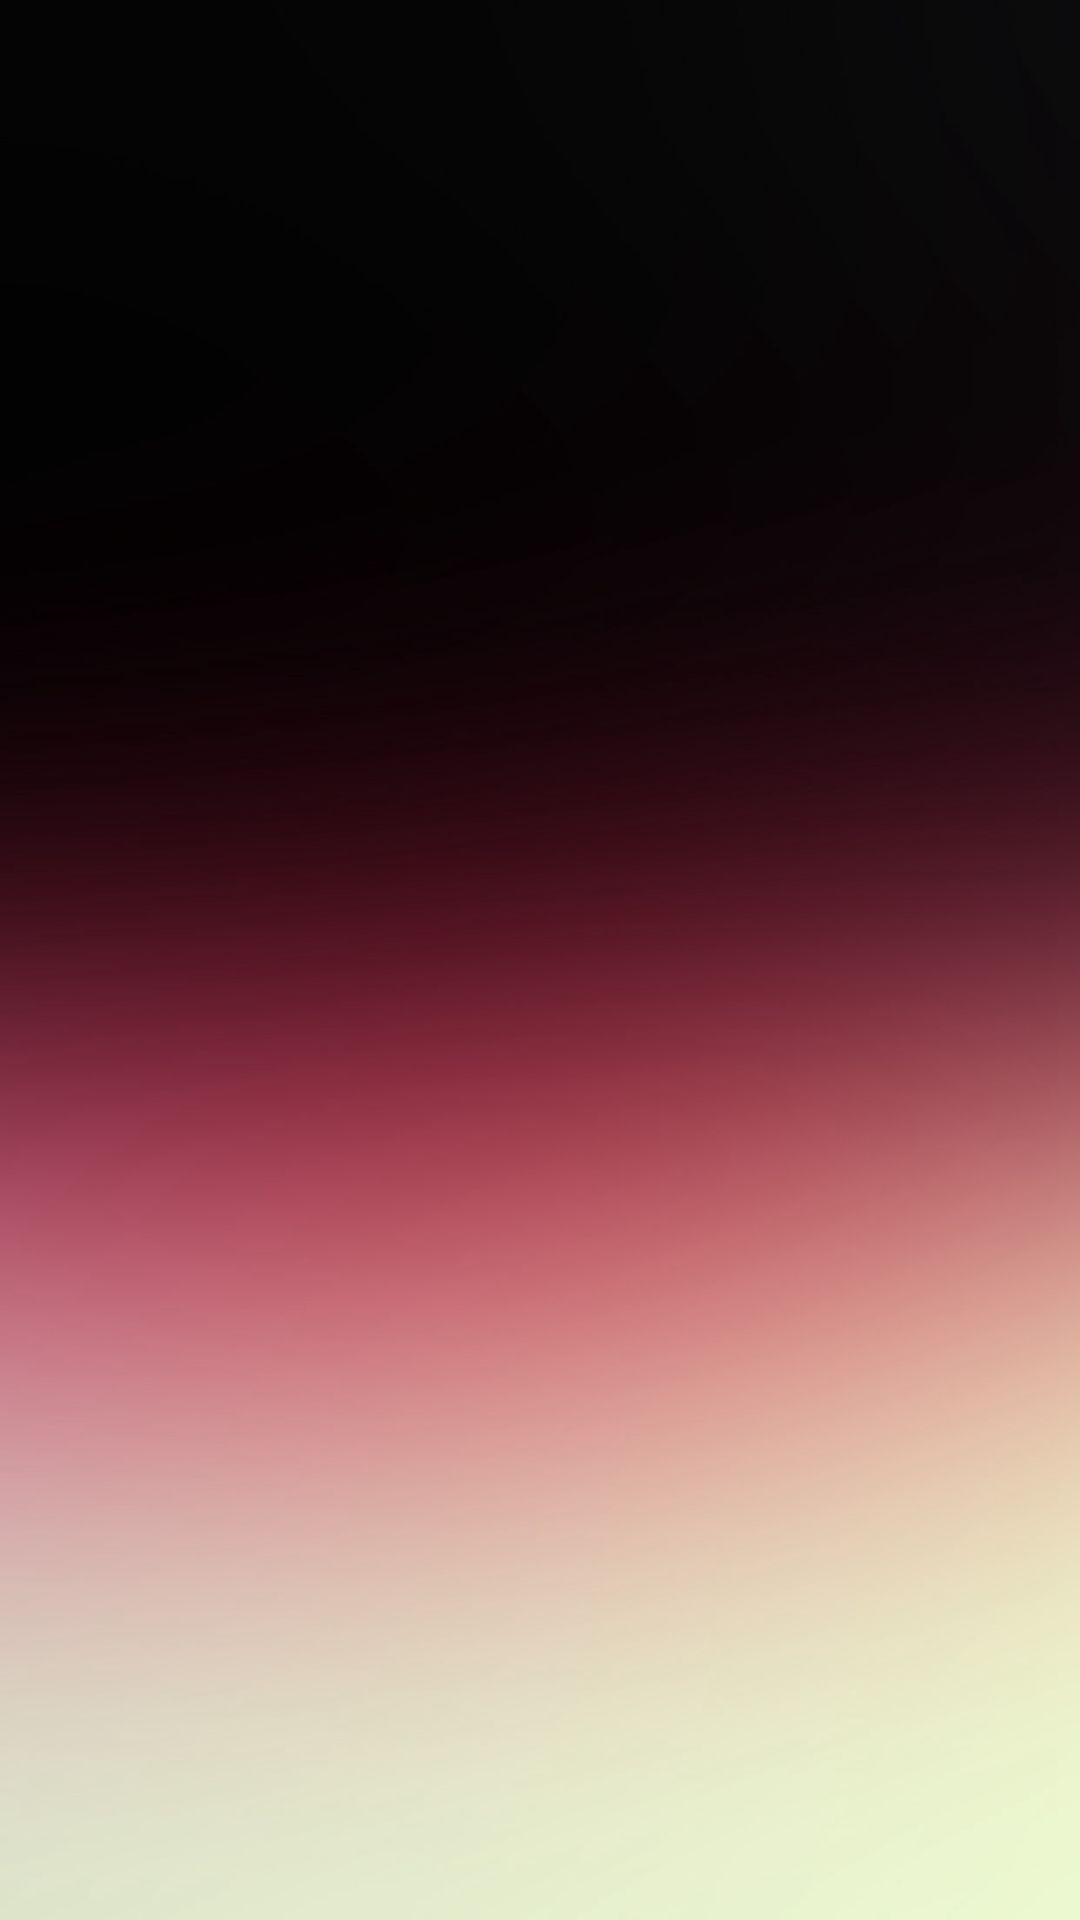 1080x1920 Màu đỏ đậm Bokeh Gradation Blur Pink Hình nền iPhone 8 miễn phí